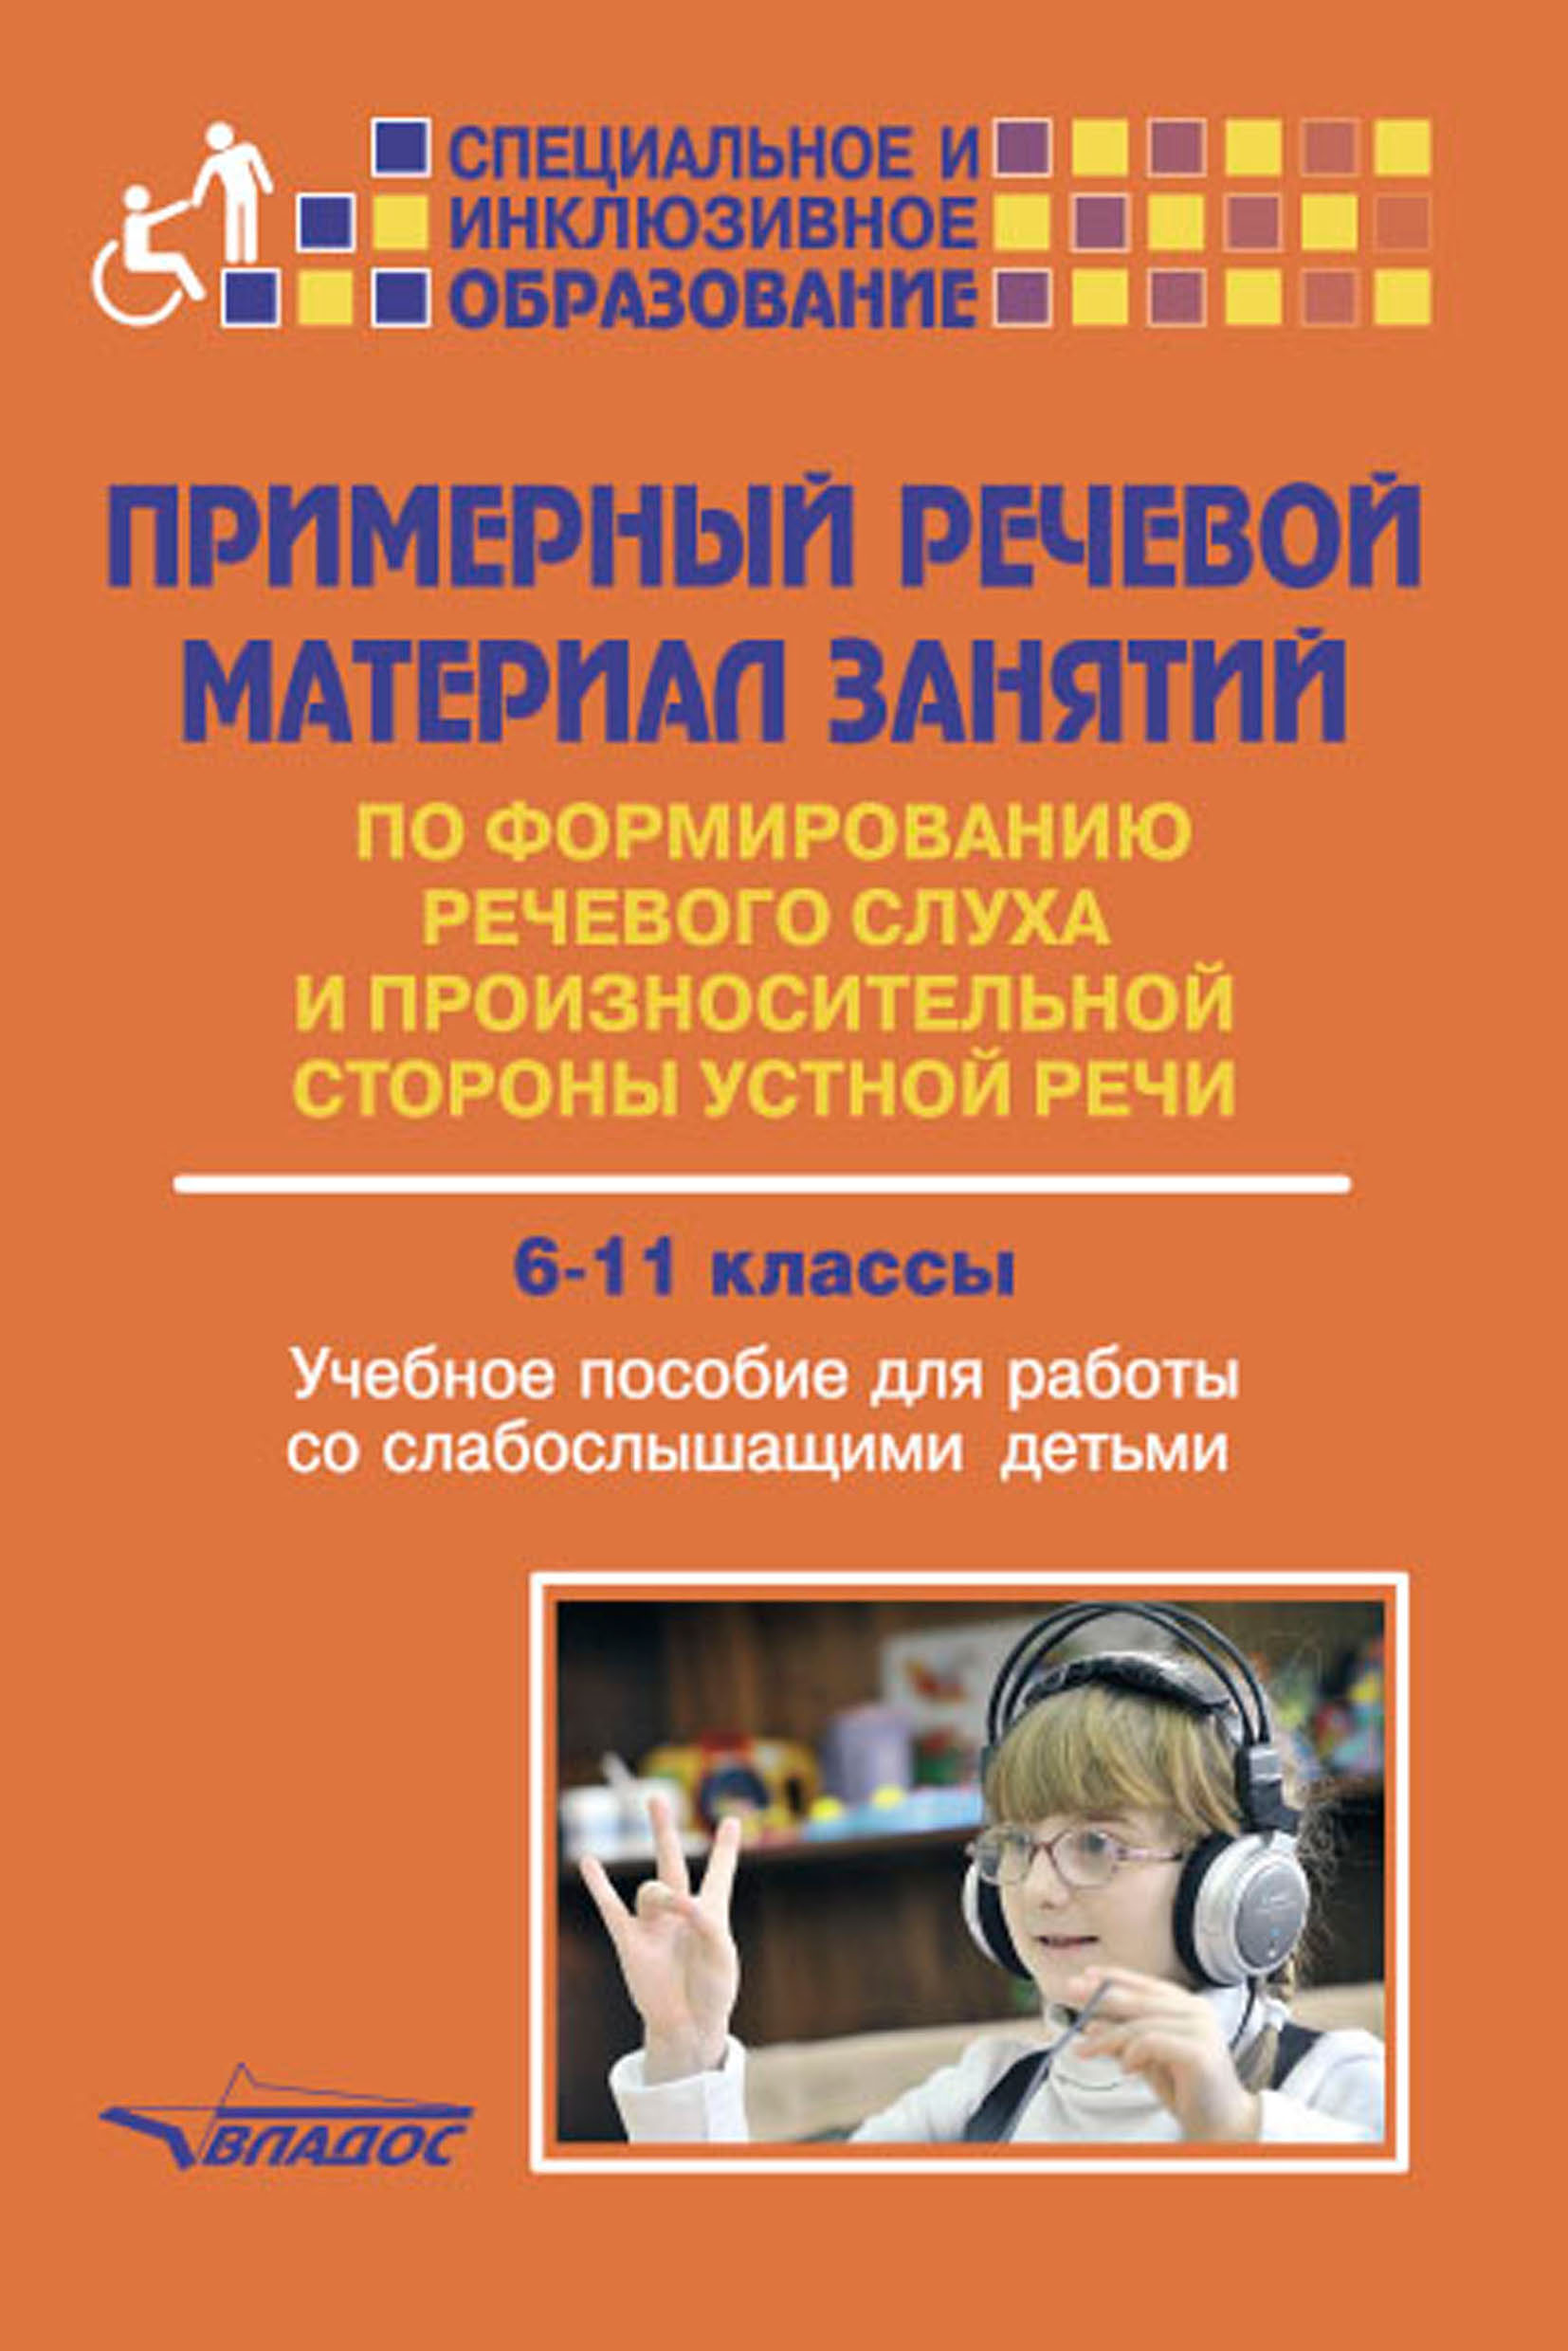 Программа для глухих детей. Учебное пособие для слабослышащих детей. Книги по формированию речевого слуха. Примерный речевой материал занятий по формированию. Пособия для детей с нарушением слуха.